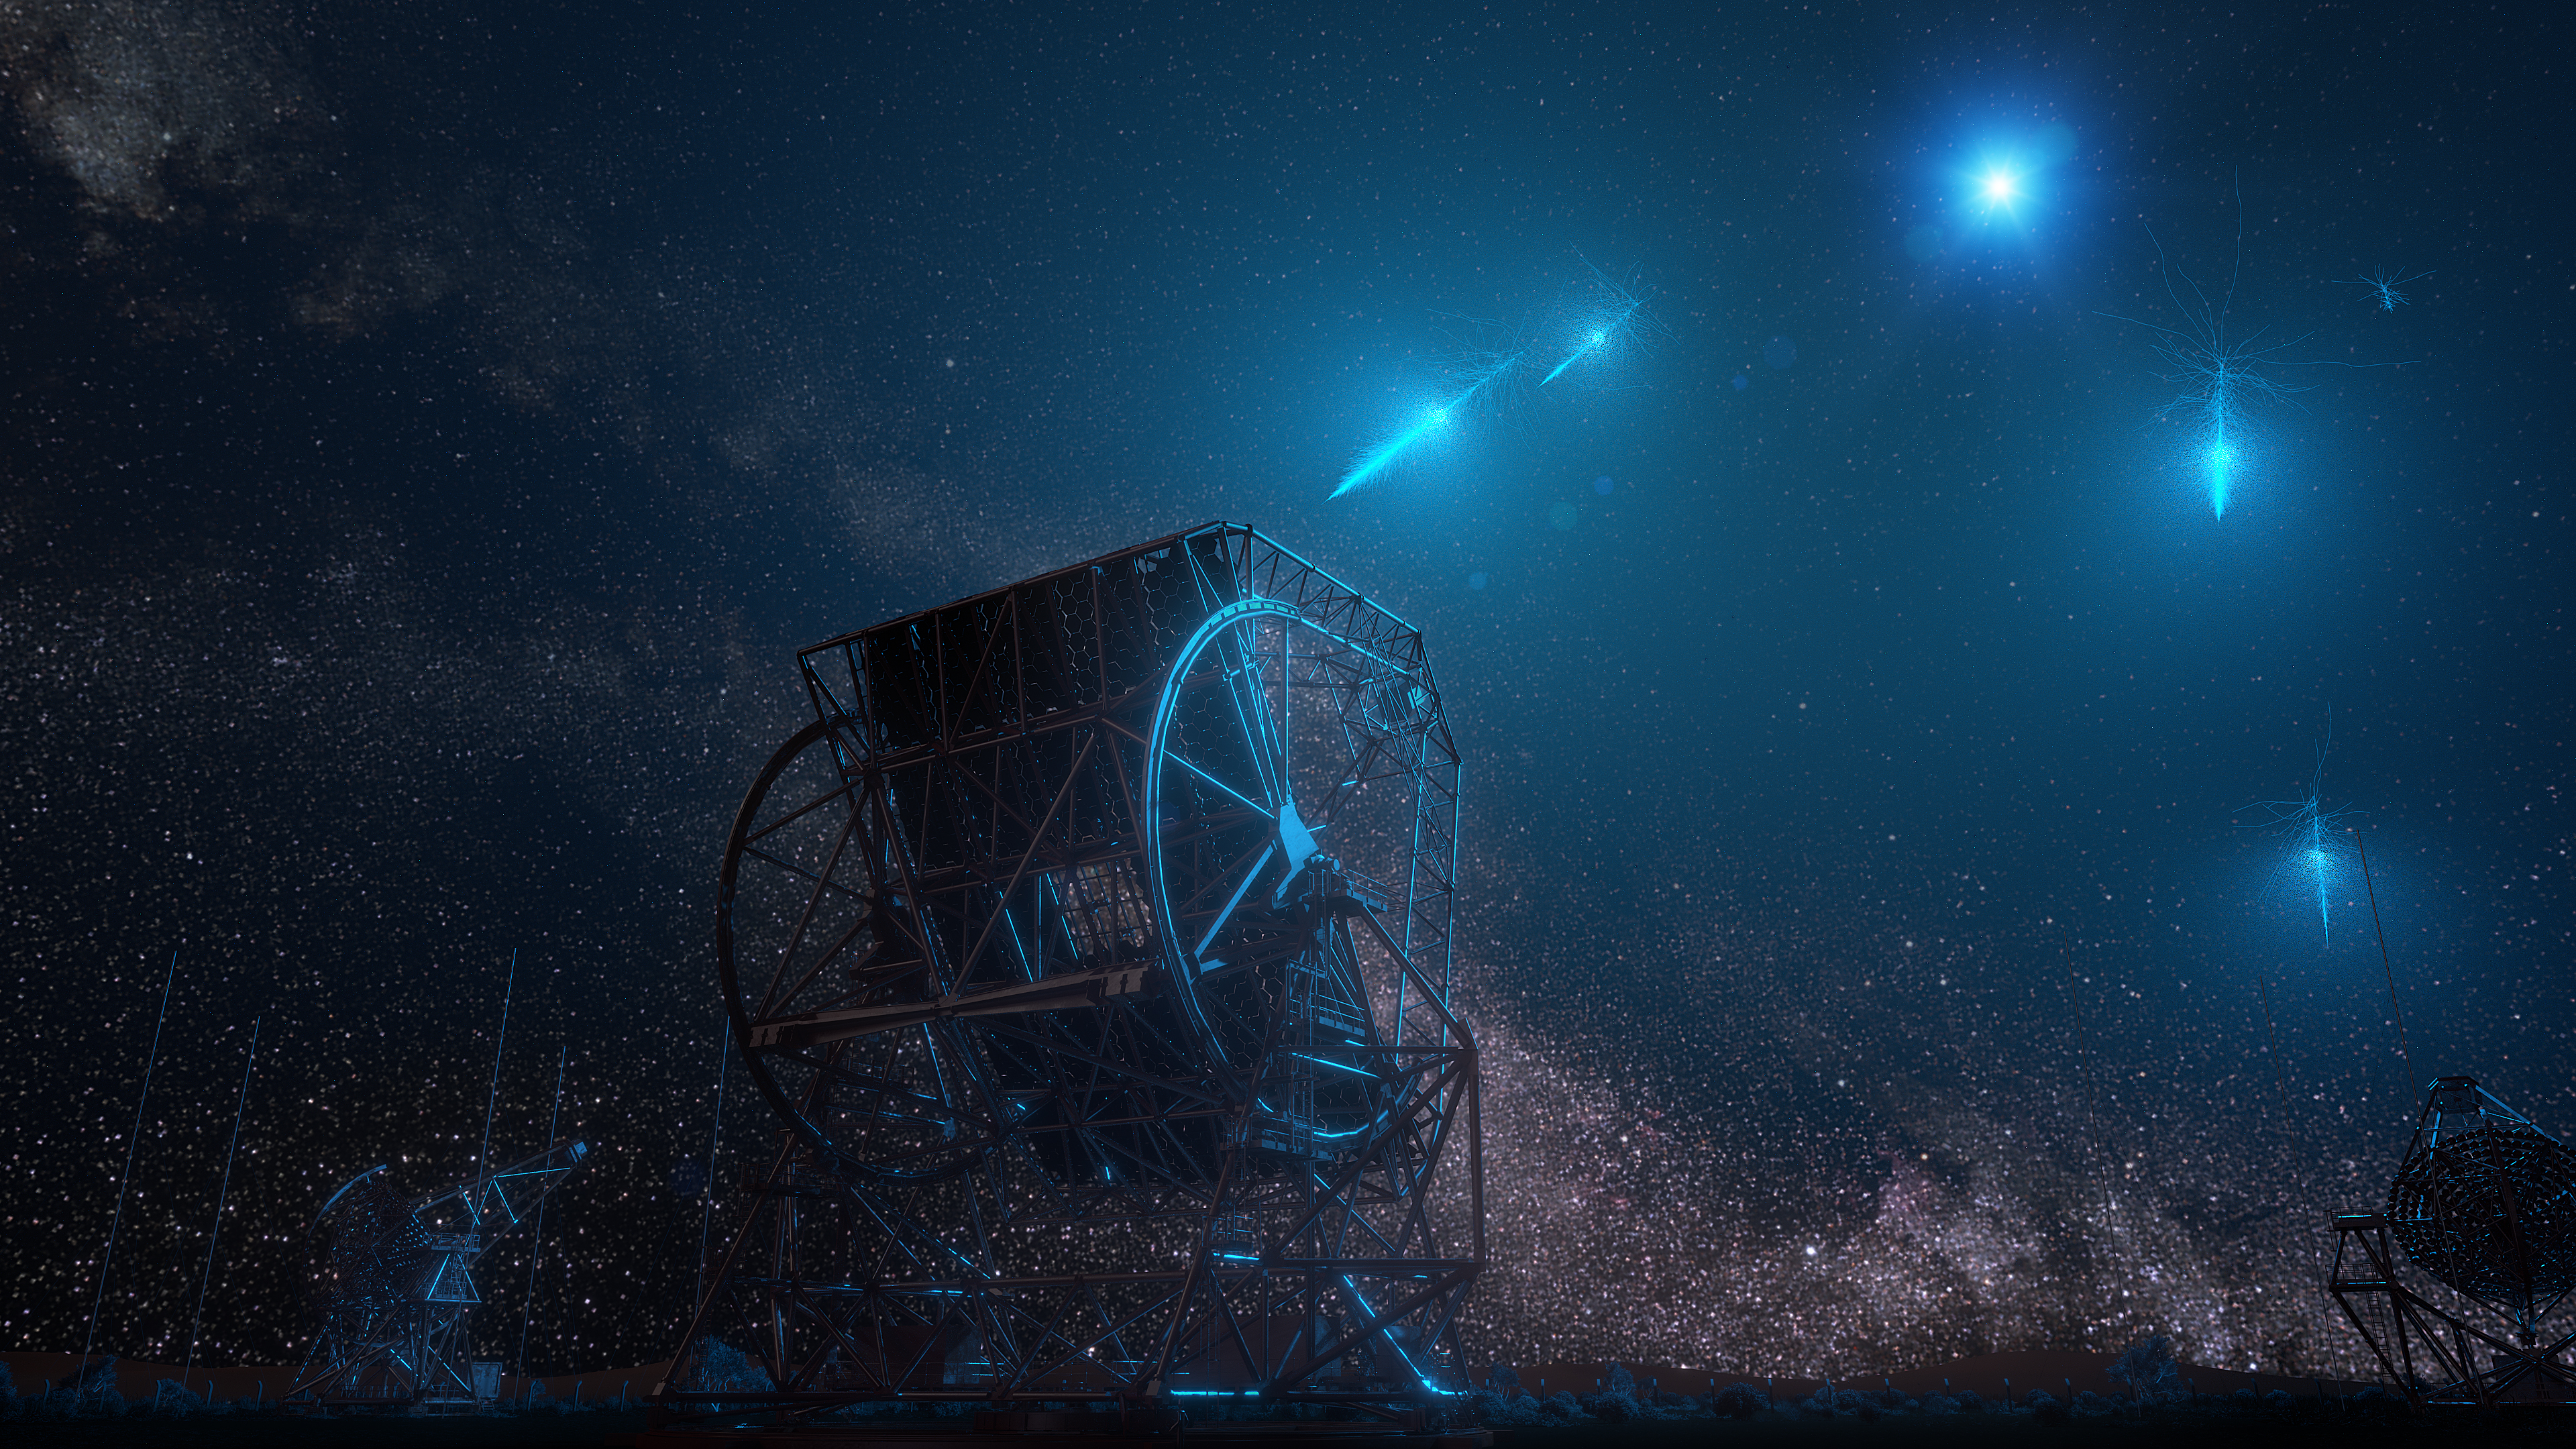 Wizja artystyczna chwili, gdy bardzo energetyczne fotony z rozbłysku gamma GRB wlatują w atmosferę ziemską - inicjując deszcz błysków, które zostały zarejestrowane przez znajdujące się na Ziemi teleskopy H.E.S.S. Jest to wizja artystyczna zjawiska z punktu obserwacyjnego tuż przy teleskopach H.E.S.S. w Namibii. Źródło: DESY, Science Communication Lab